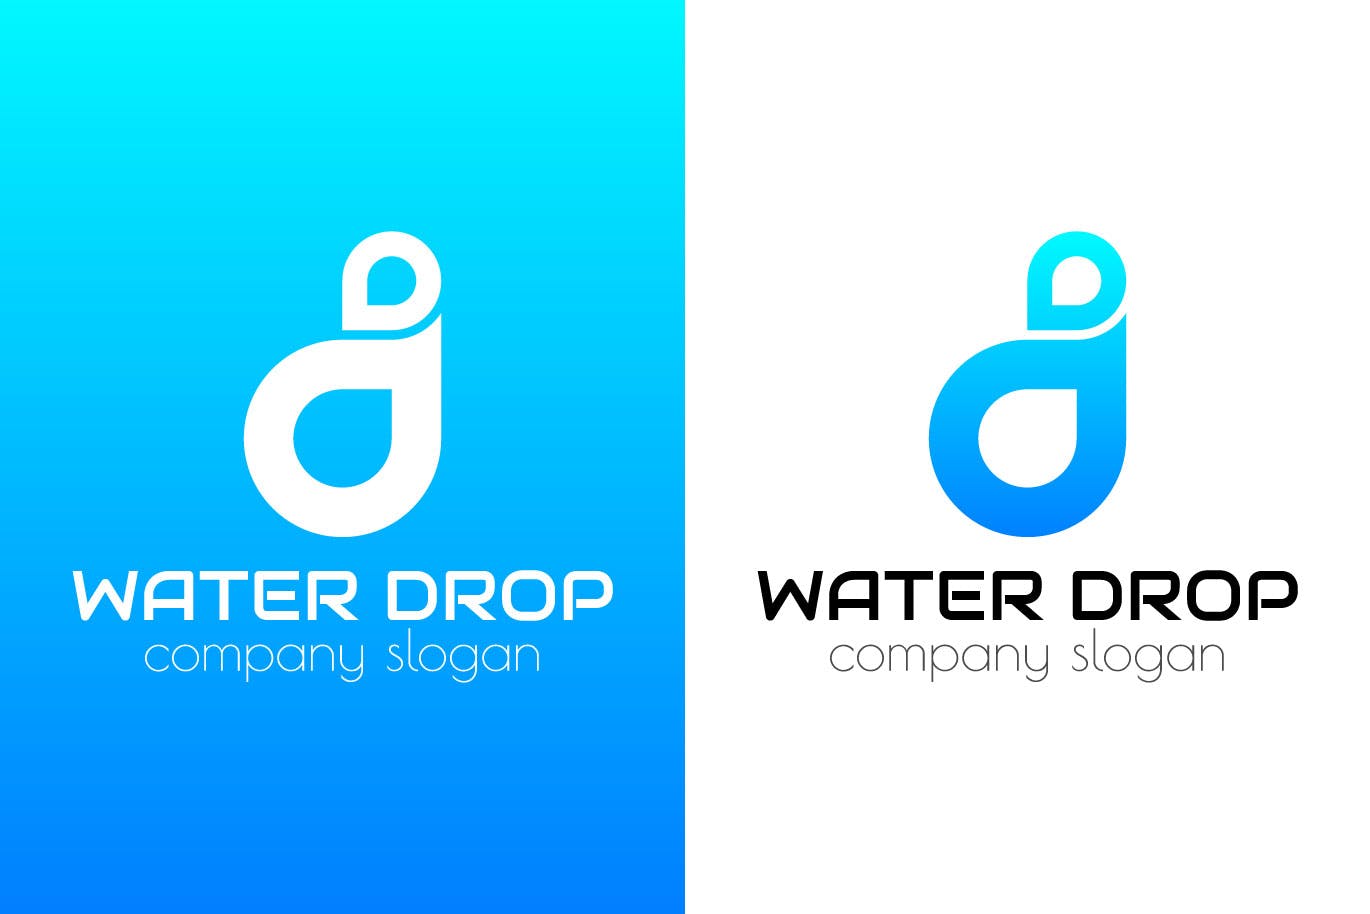 水滴几何图形创意Logo设计第一素材精选模板 Water Drop Creative Logo Template插图(1)